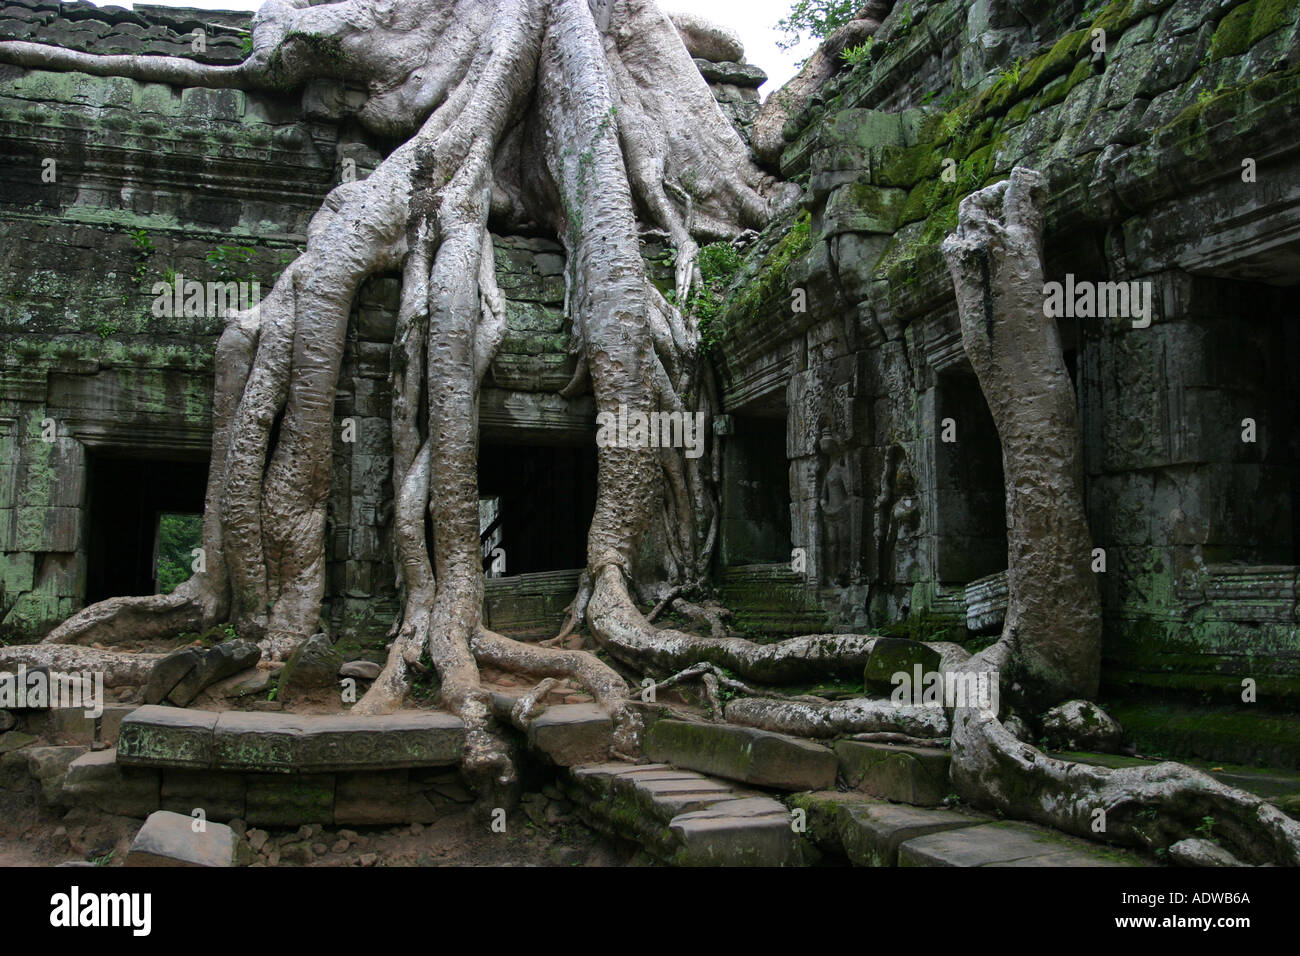 Racines de l'arbre géant croître au cours d'une fameuse année 1000 vieux temple populaires auprès des touristes à Ta Phrom Angkor Asie Cambodge complexe Banque D'Images